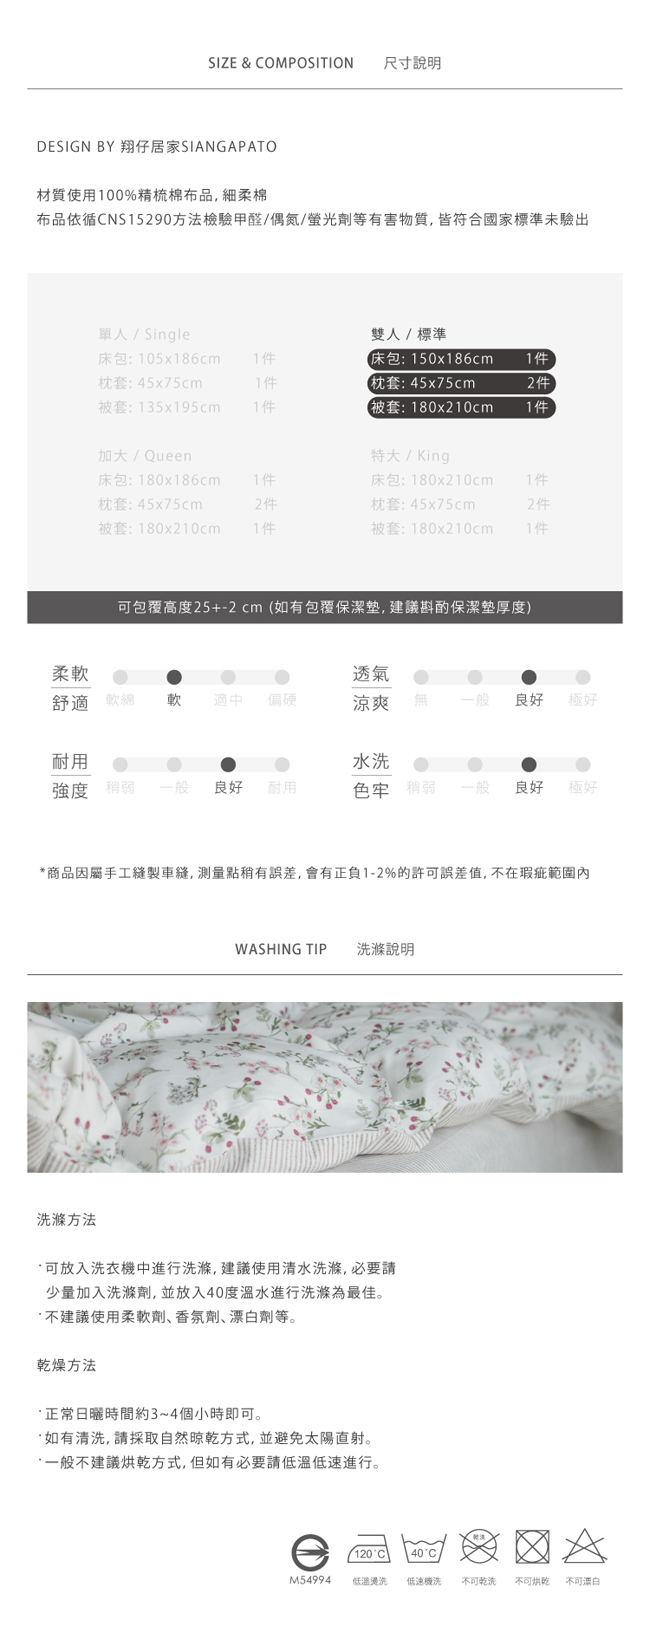 翔仔居家 台灣製 100% 精梳純棉兩用被套床包4件組 - 雙人(石礫)